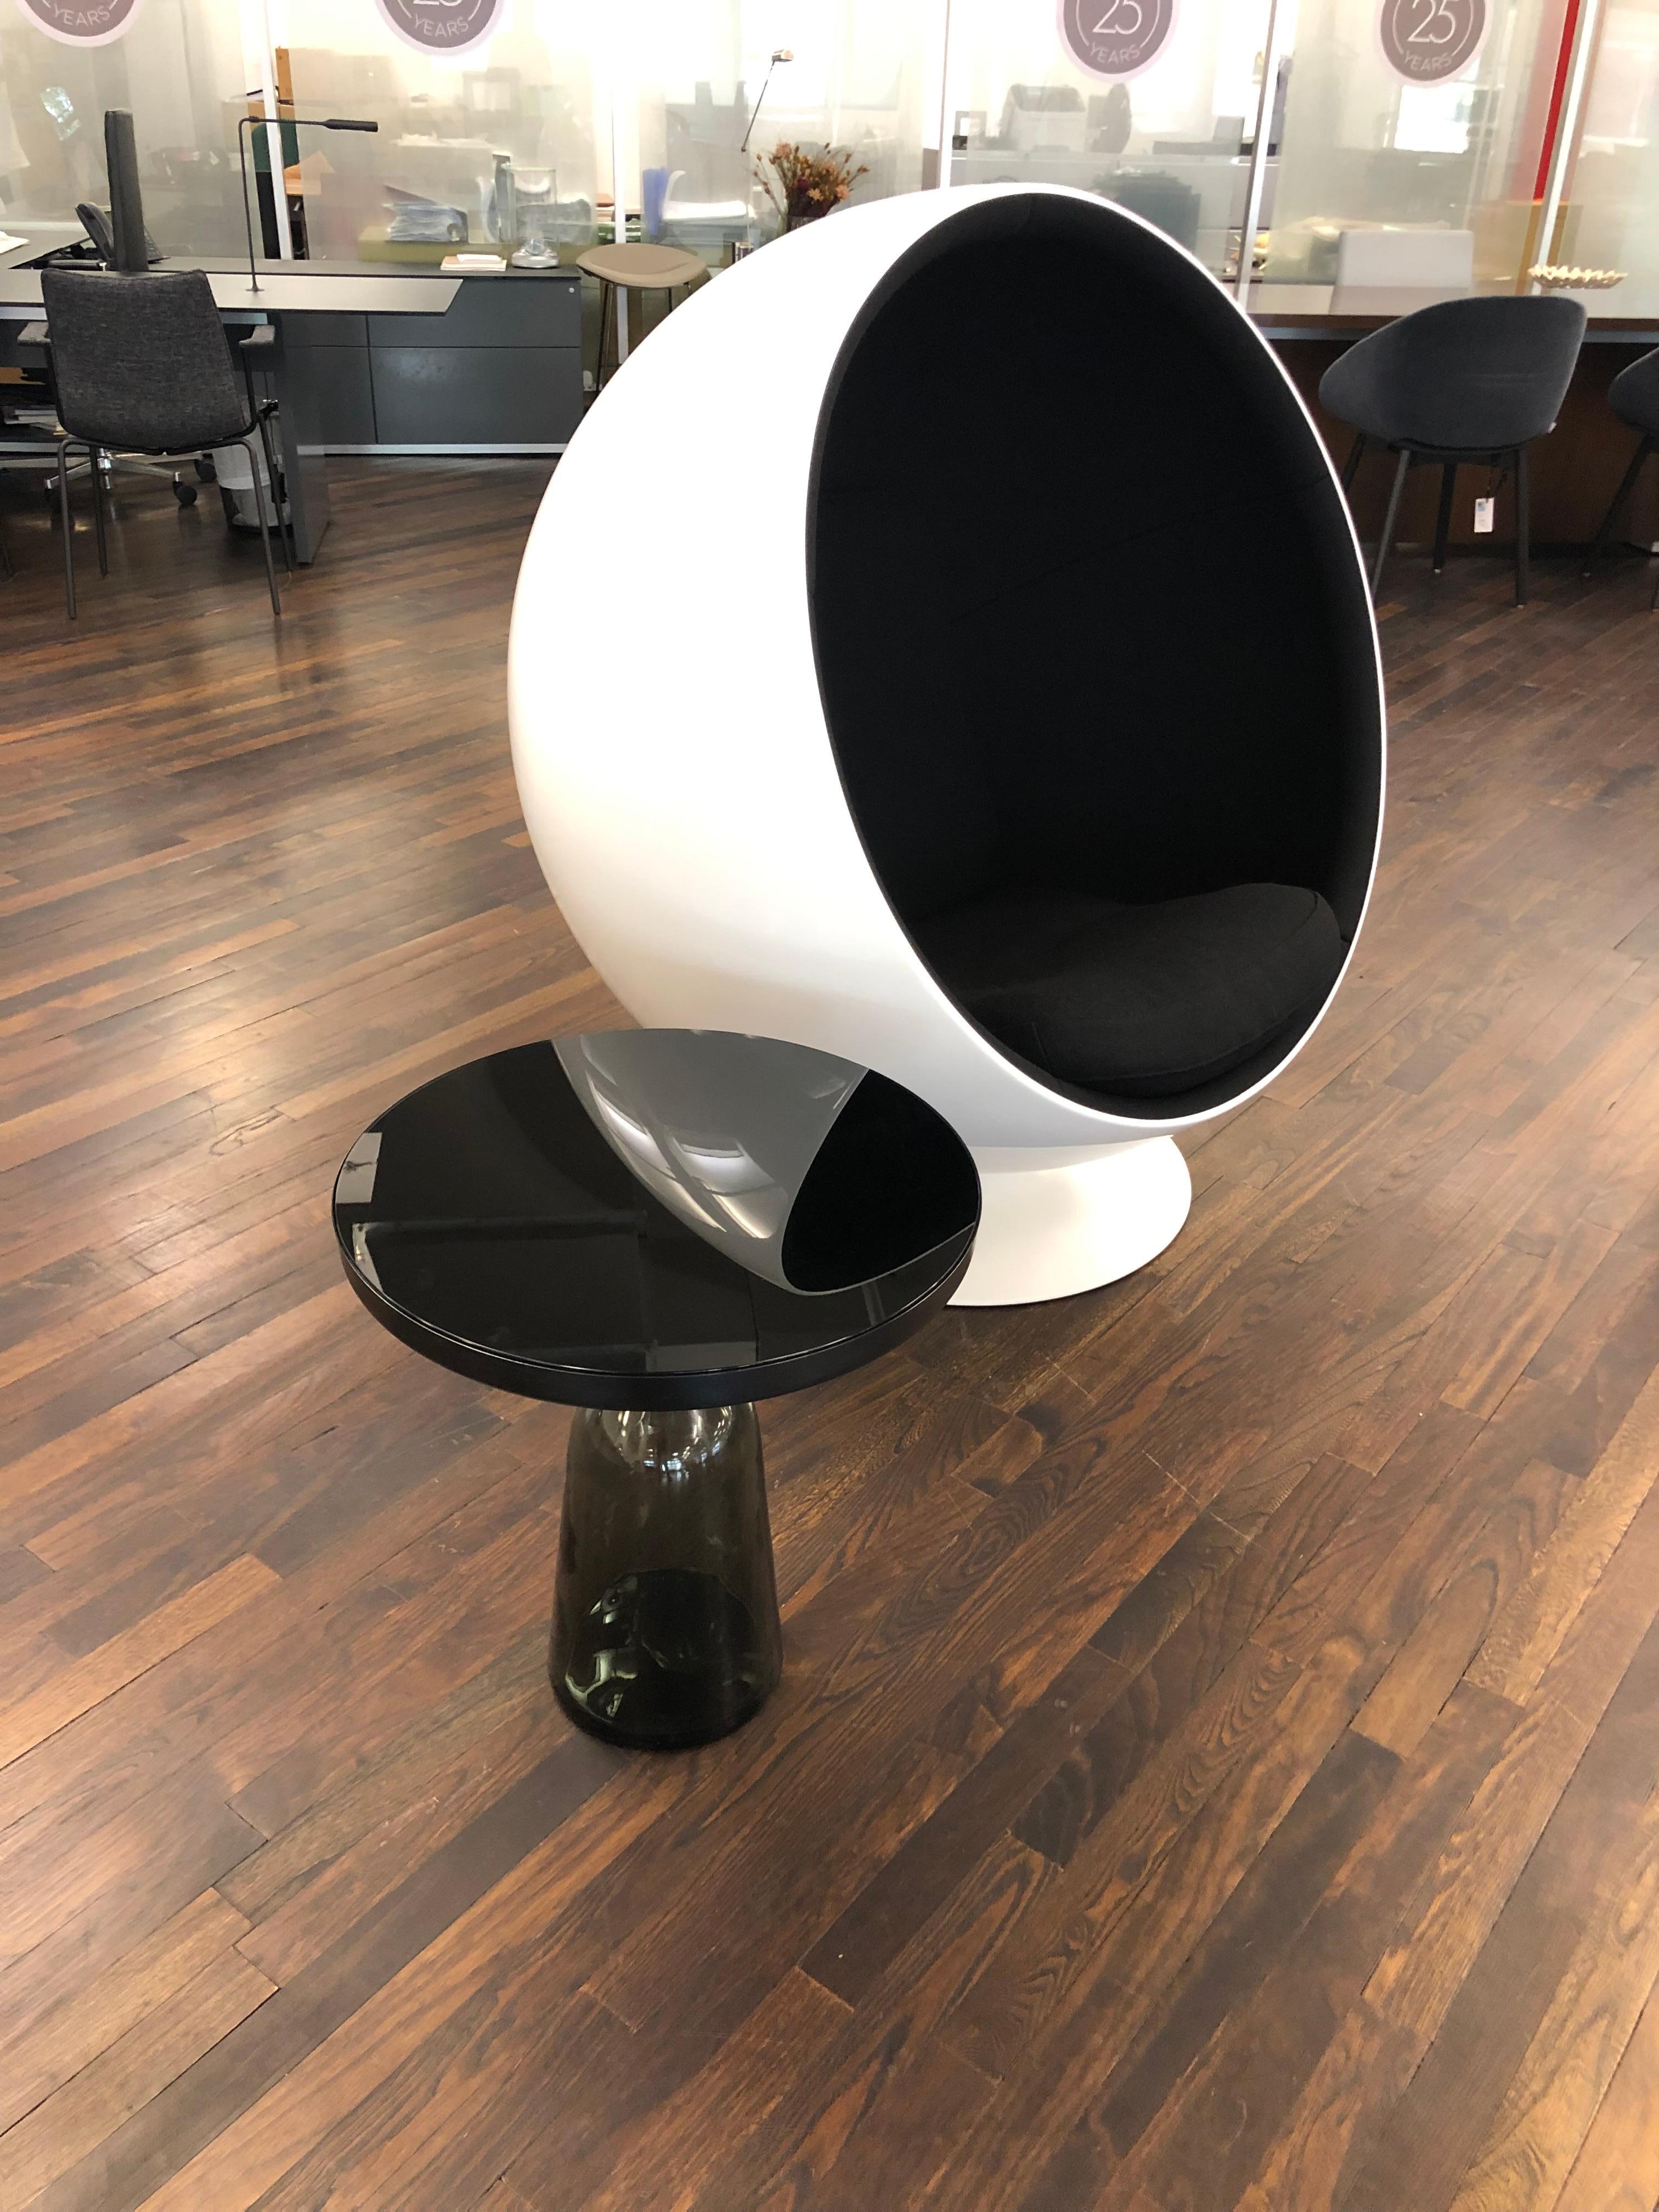 Ein ikonischer und ausdrucksstarker Sessel mit drehbarem Ball.
Der Kugelstuhl wurde 1963 entworfen und 1966 auf der Kölner Möbelmesse vorgestellt. Der Stuhl ist einer der bekanntesten und beliebtesten Klassiker des finnischen Designs und war der